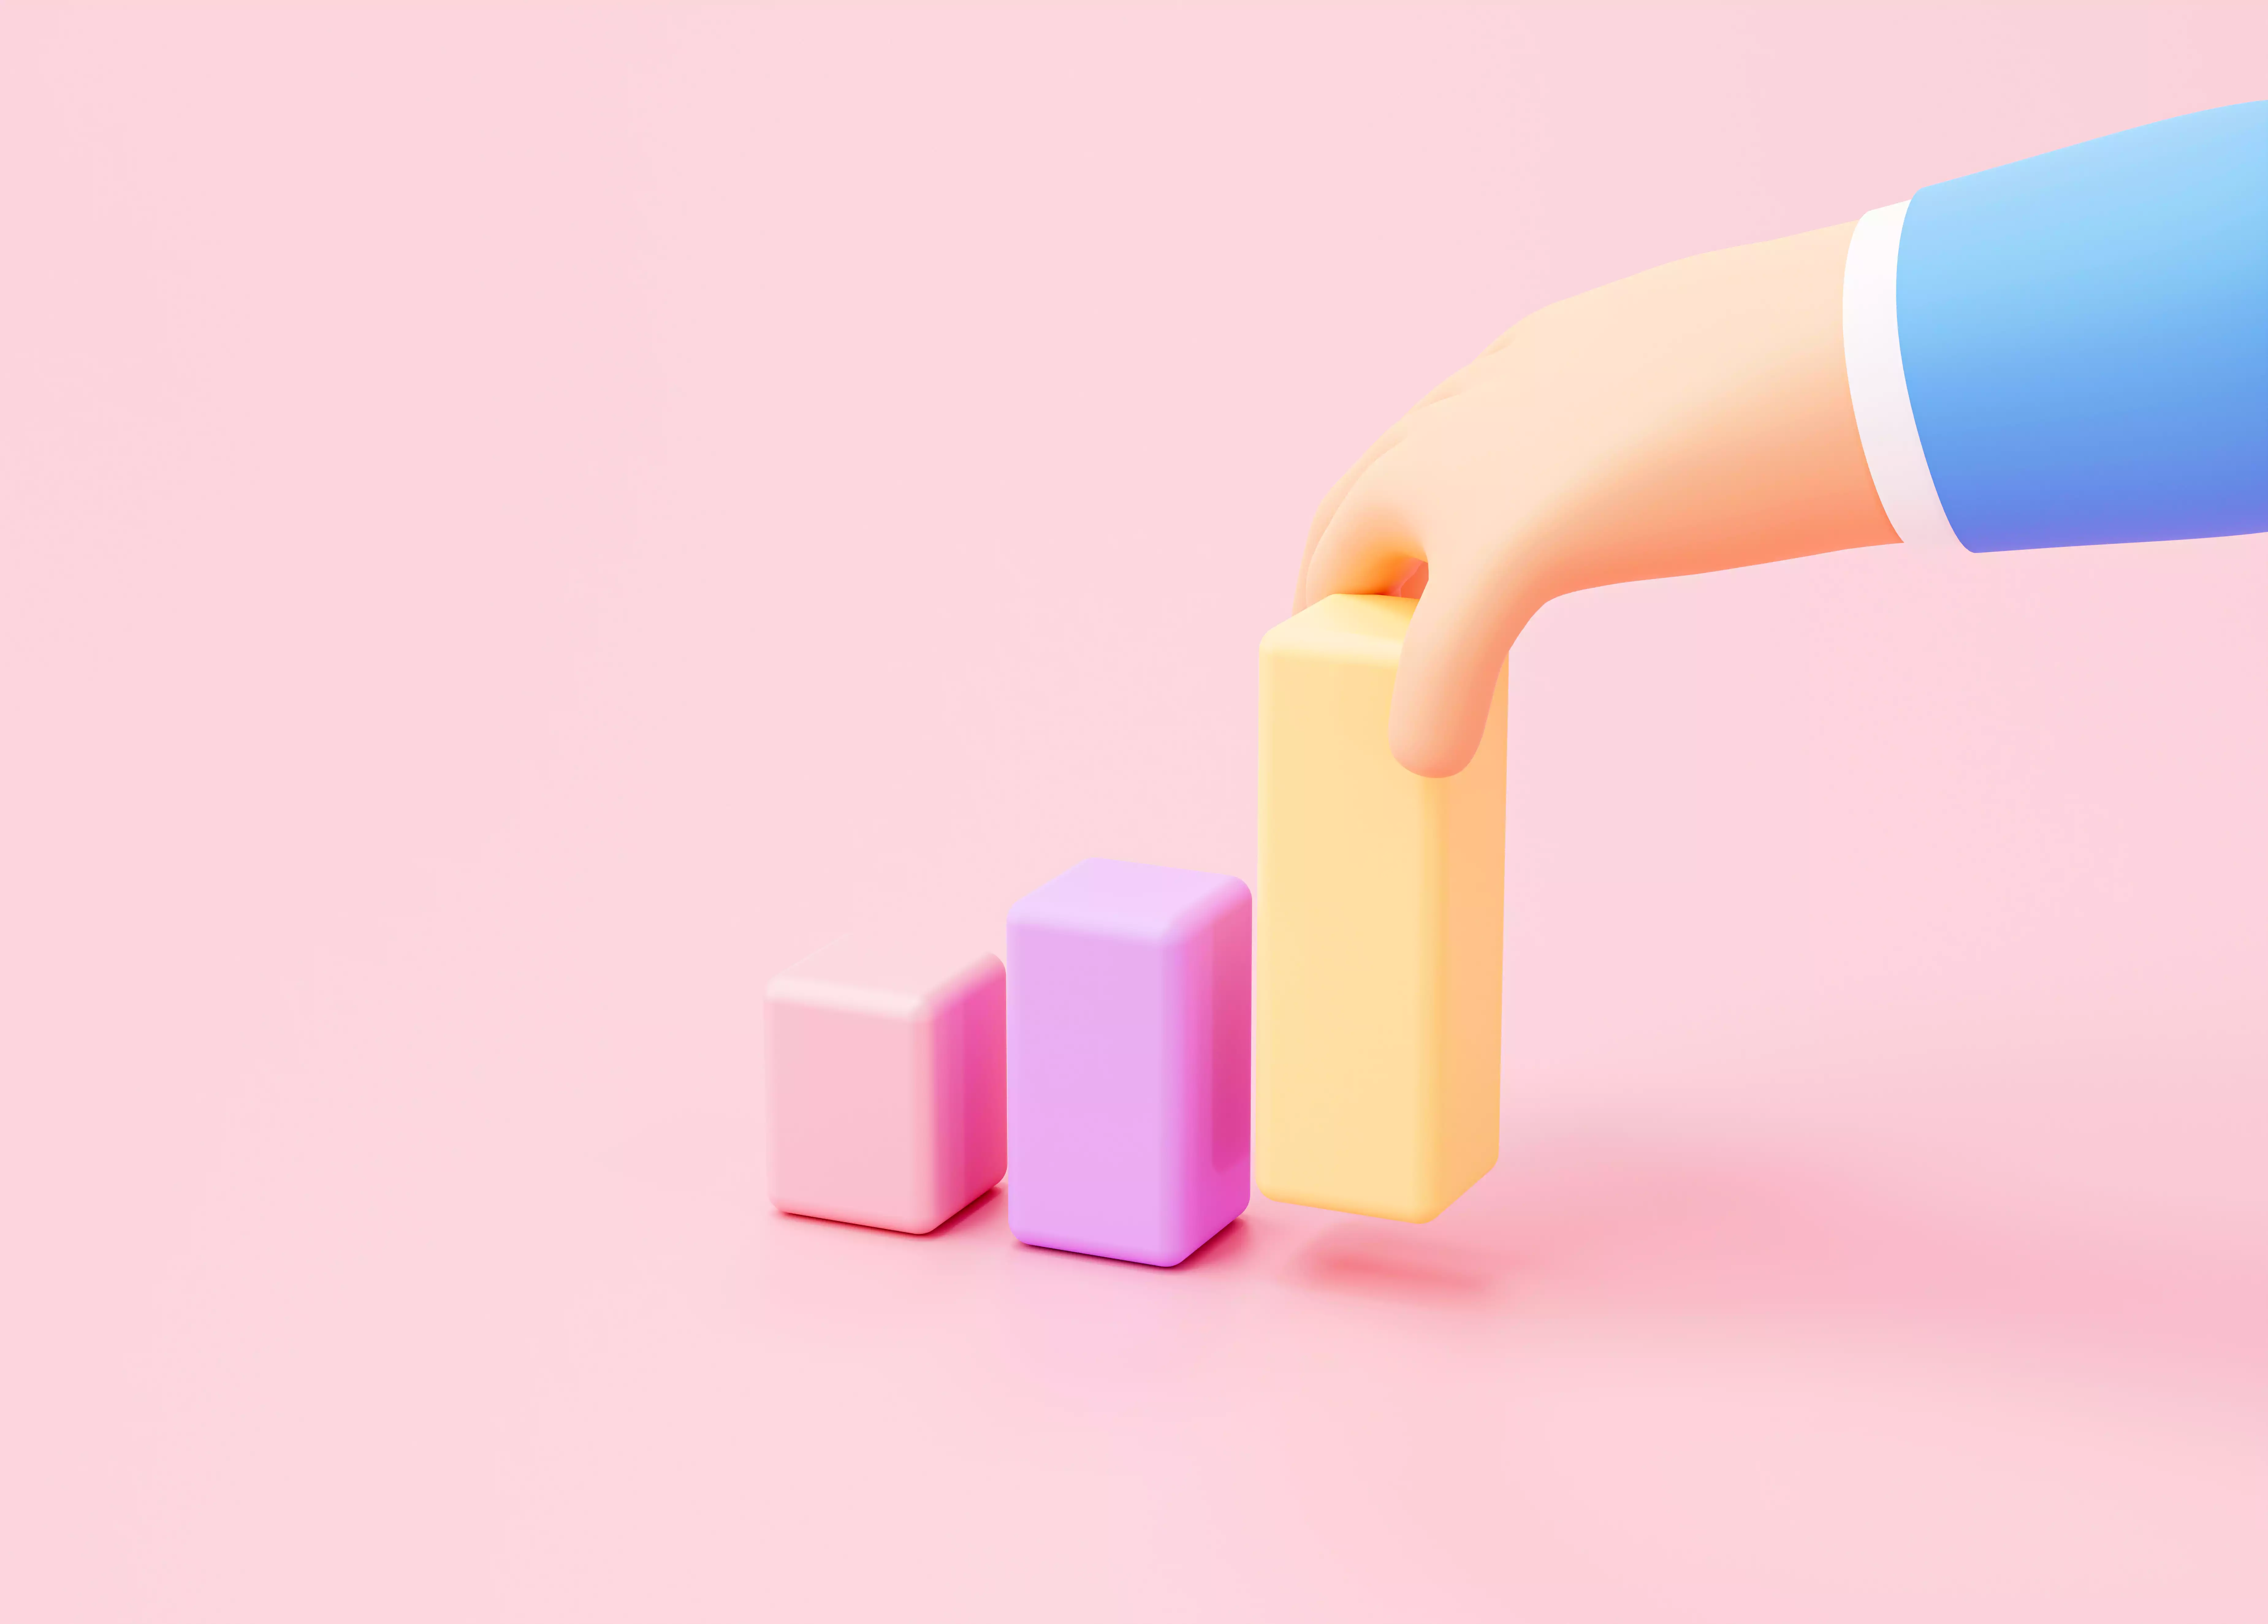 Render 3d de mano acomodando barras en forma de gráfica en fondo rosa